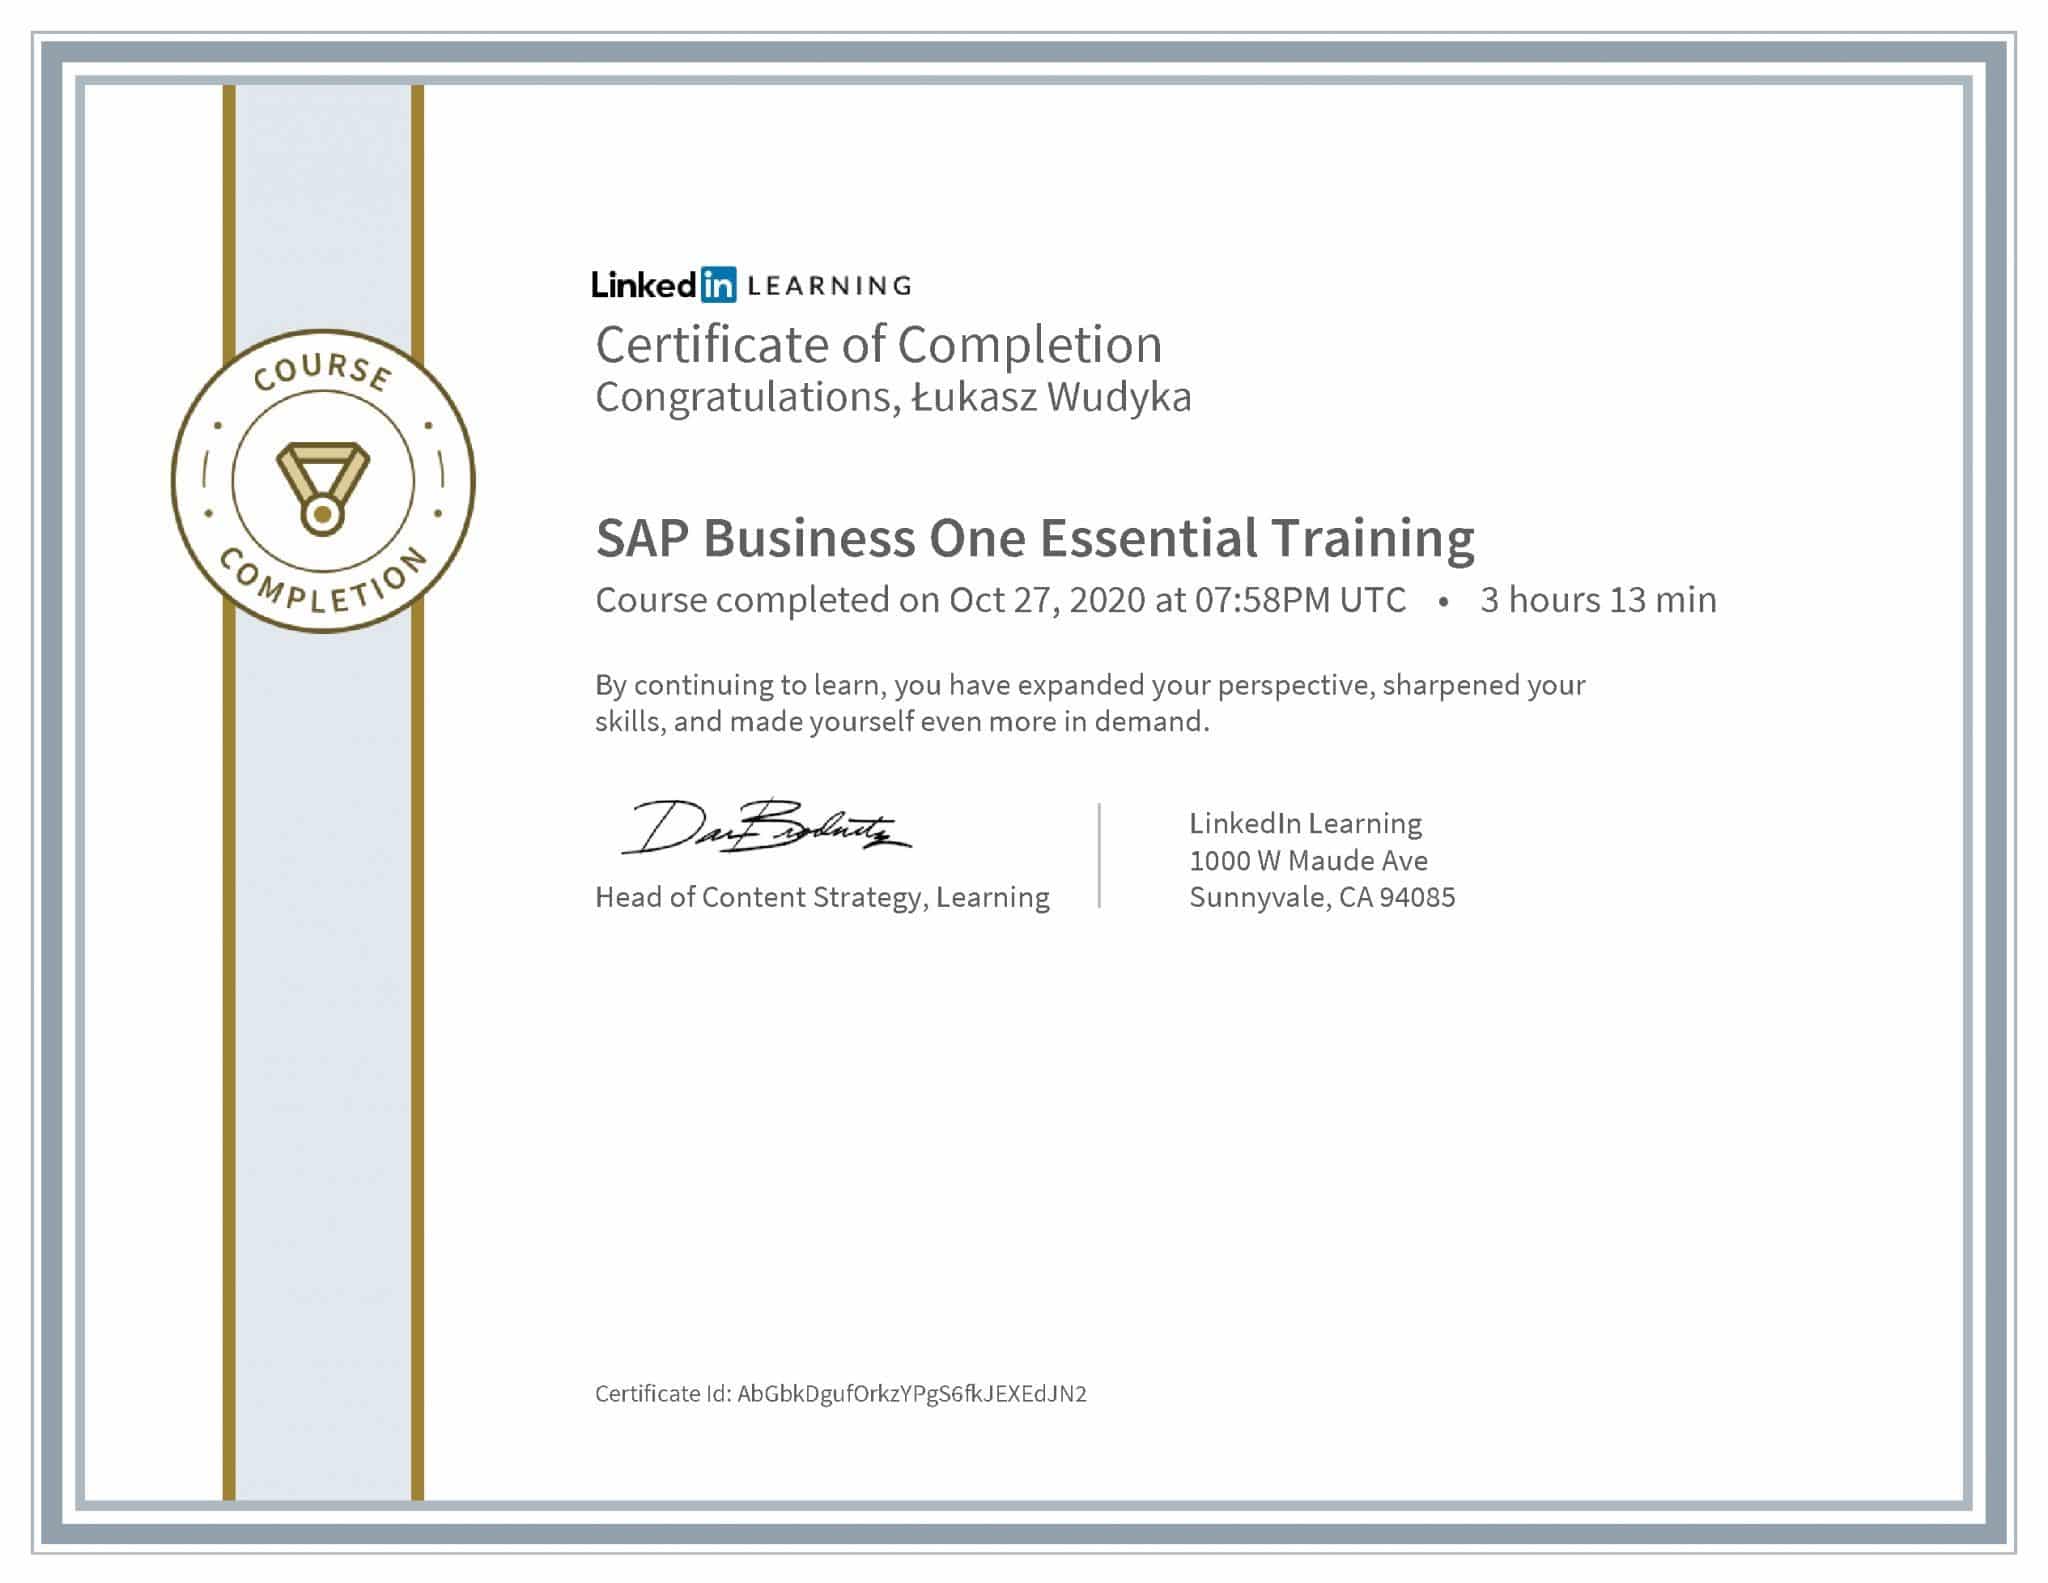 Łukasz Wudyka certyfikat LinkedIn SAP Business One Essential Training